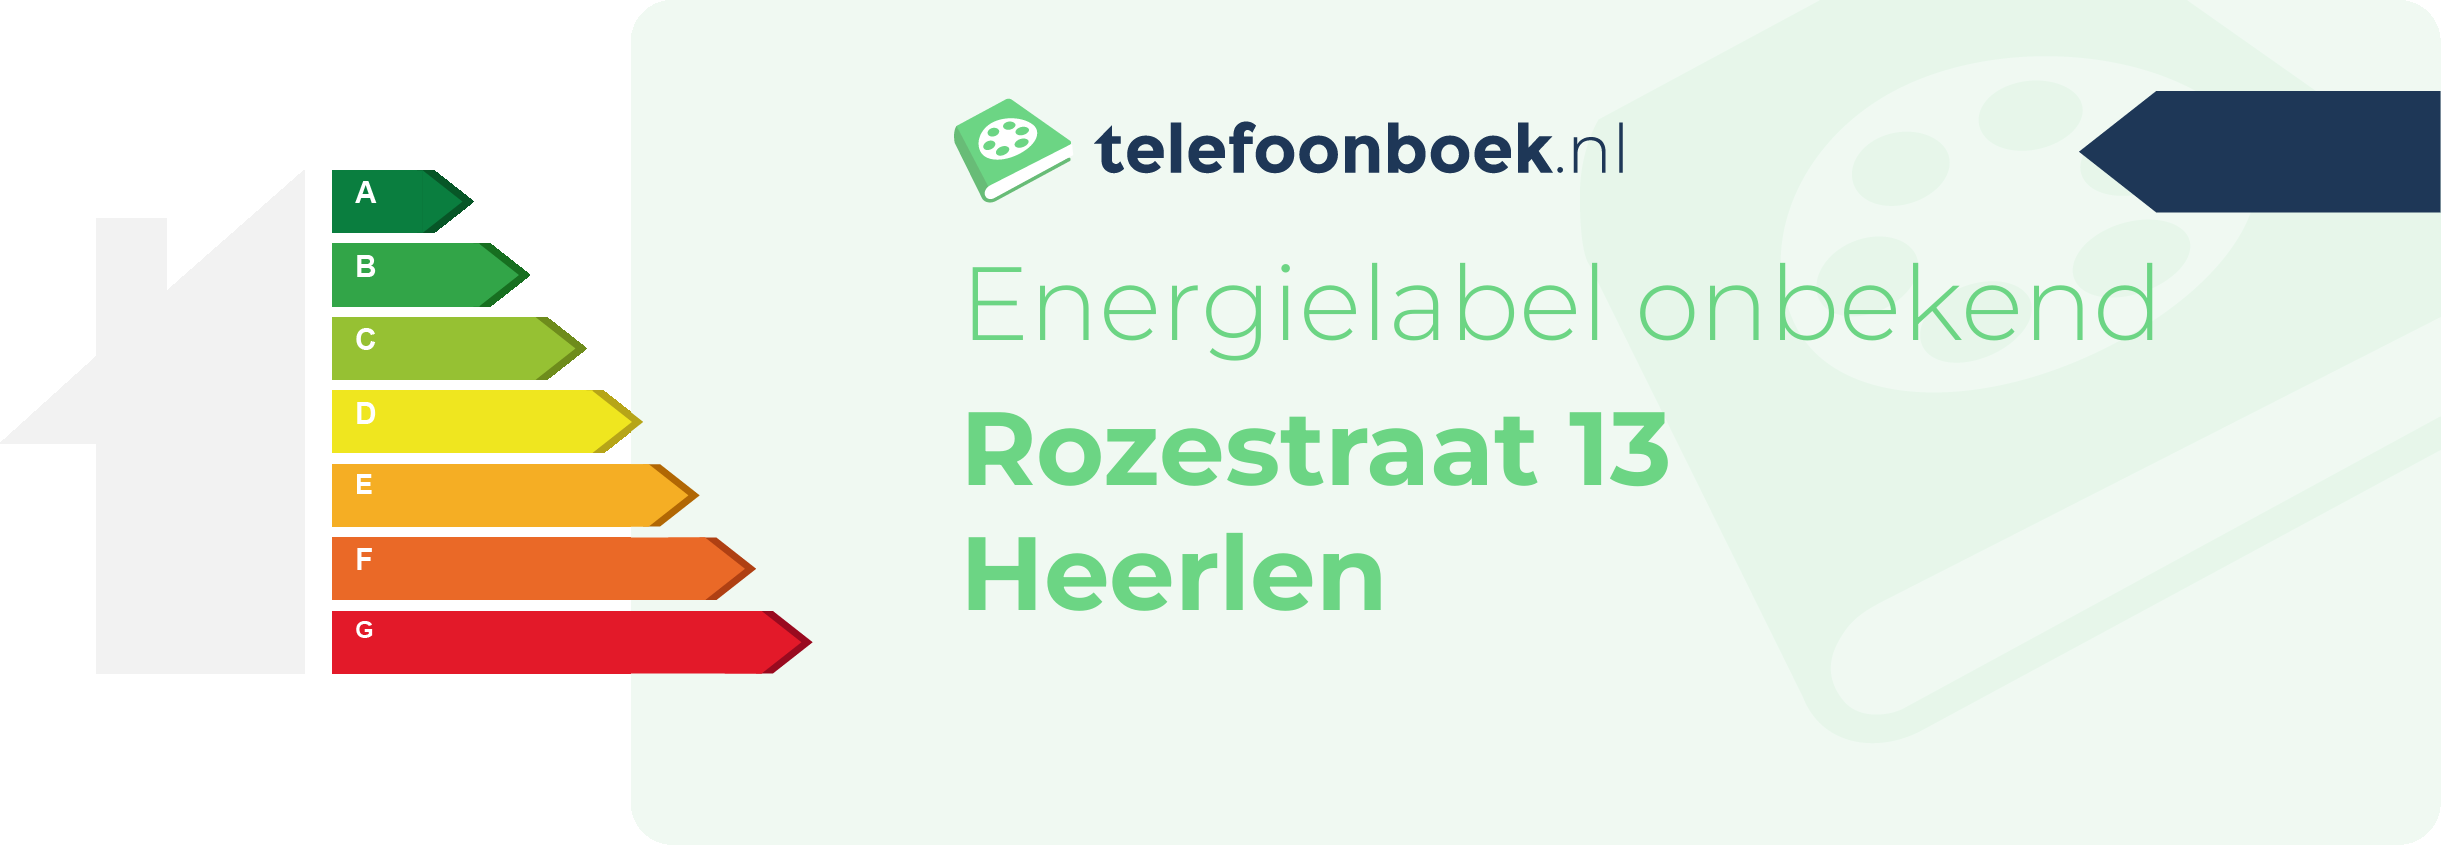 Energielabel Rozestraat 13 Heerlen